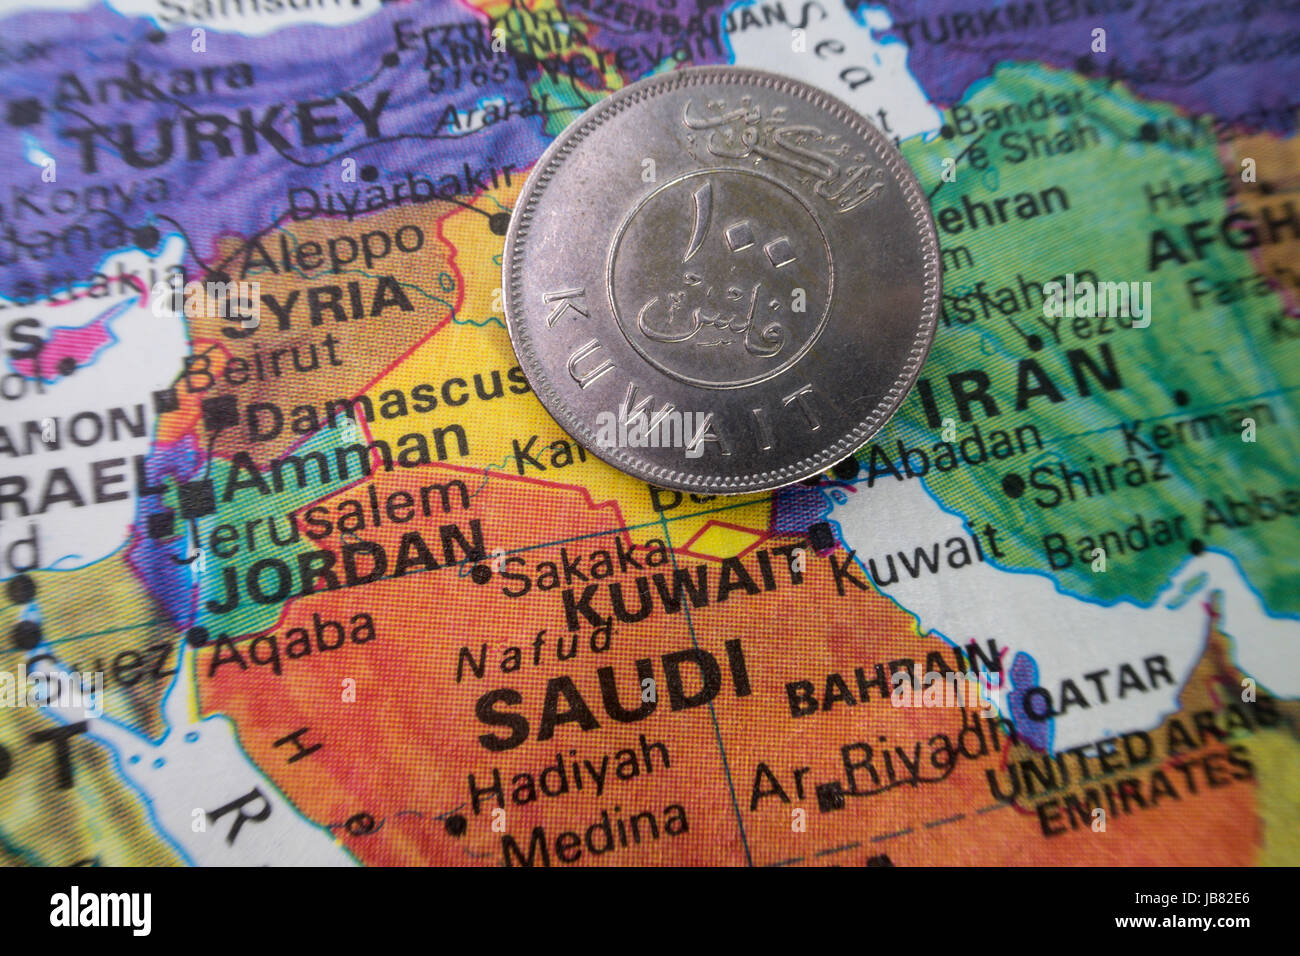 Kuwait Coin on World Map Still Life Stock Photo